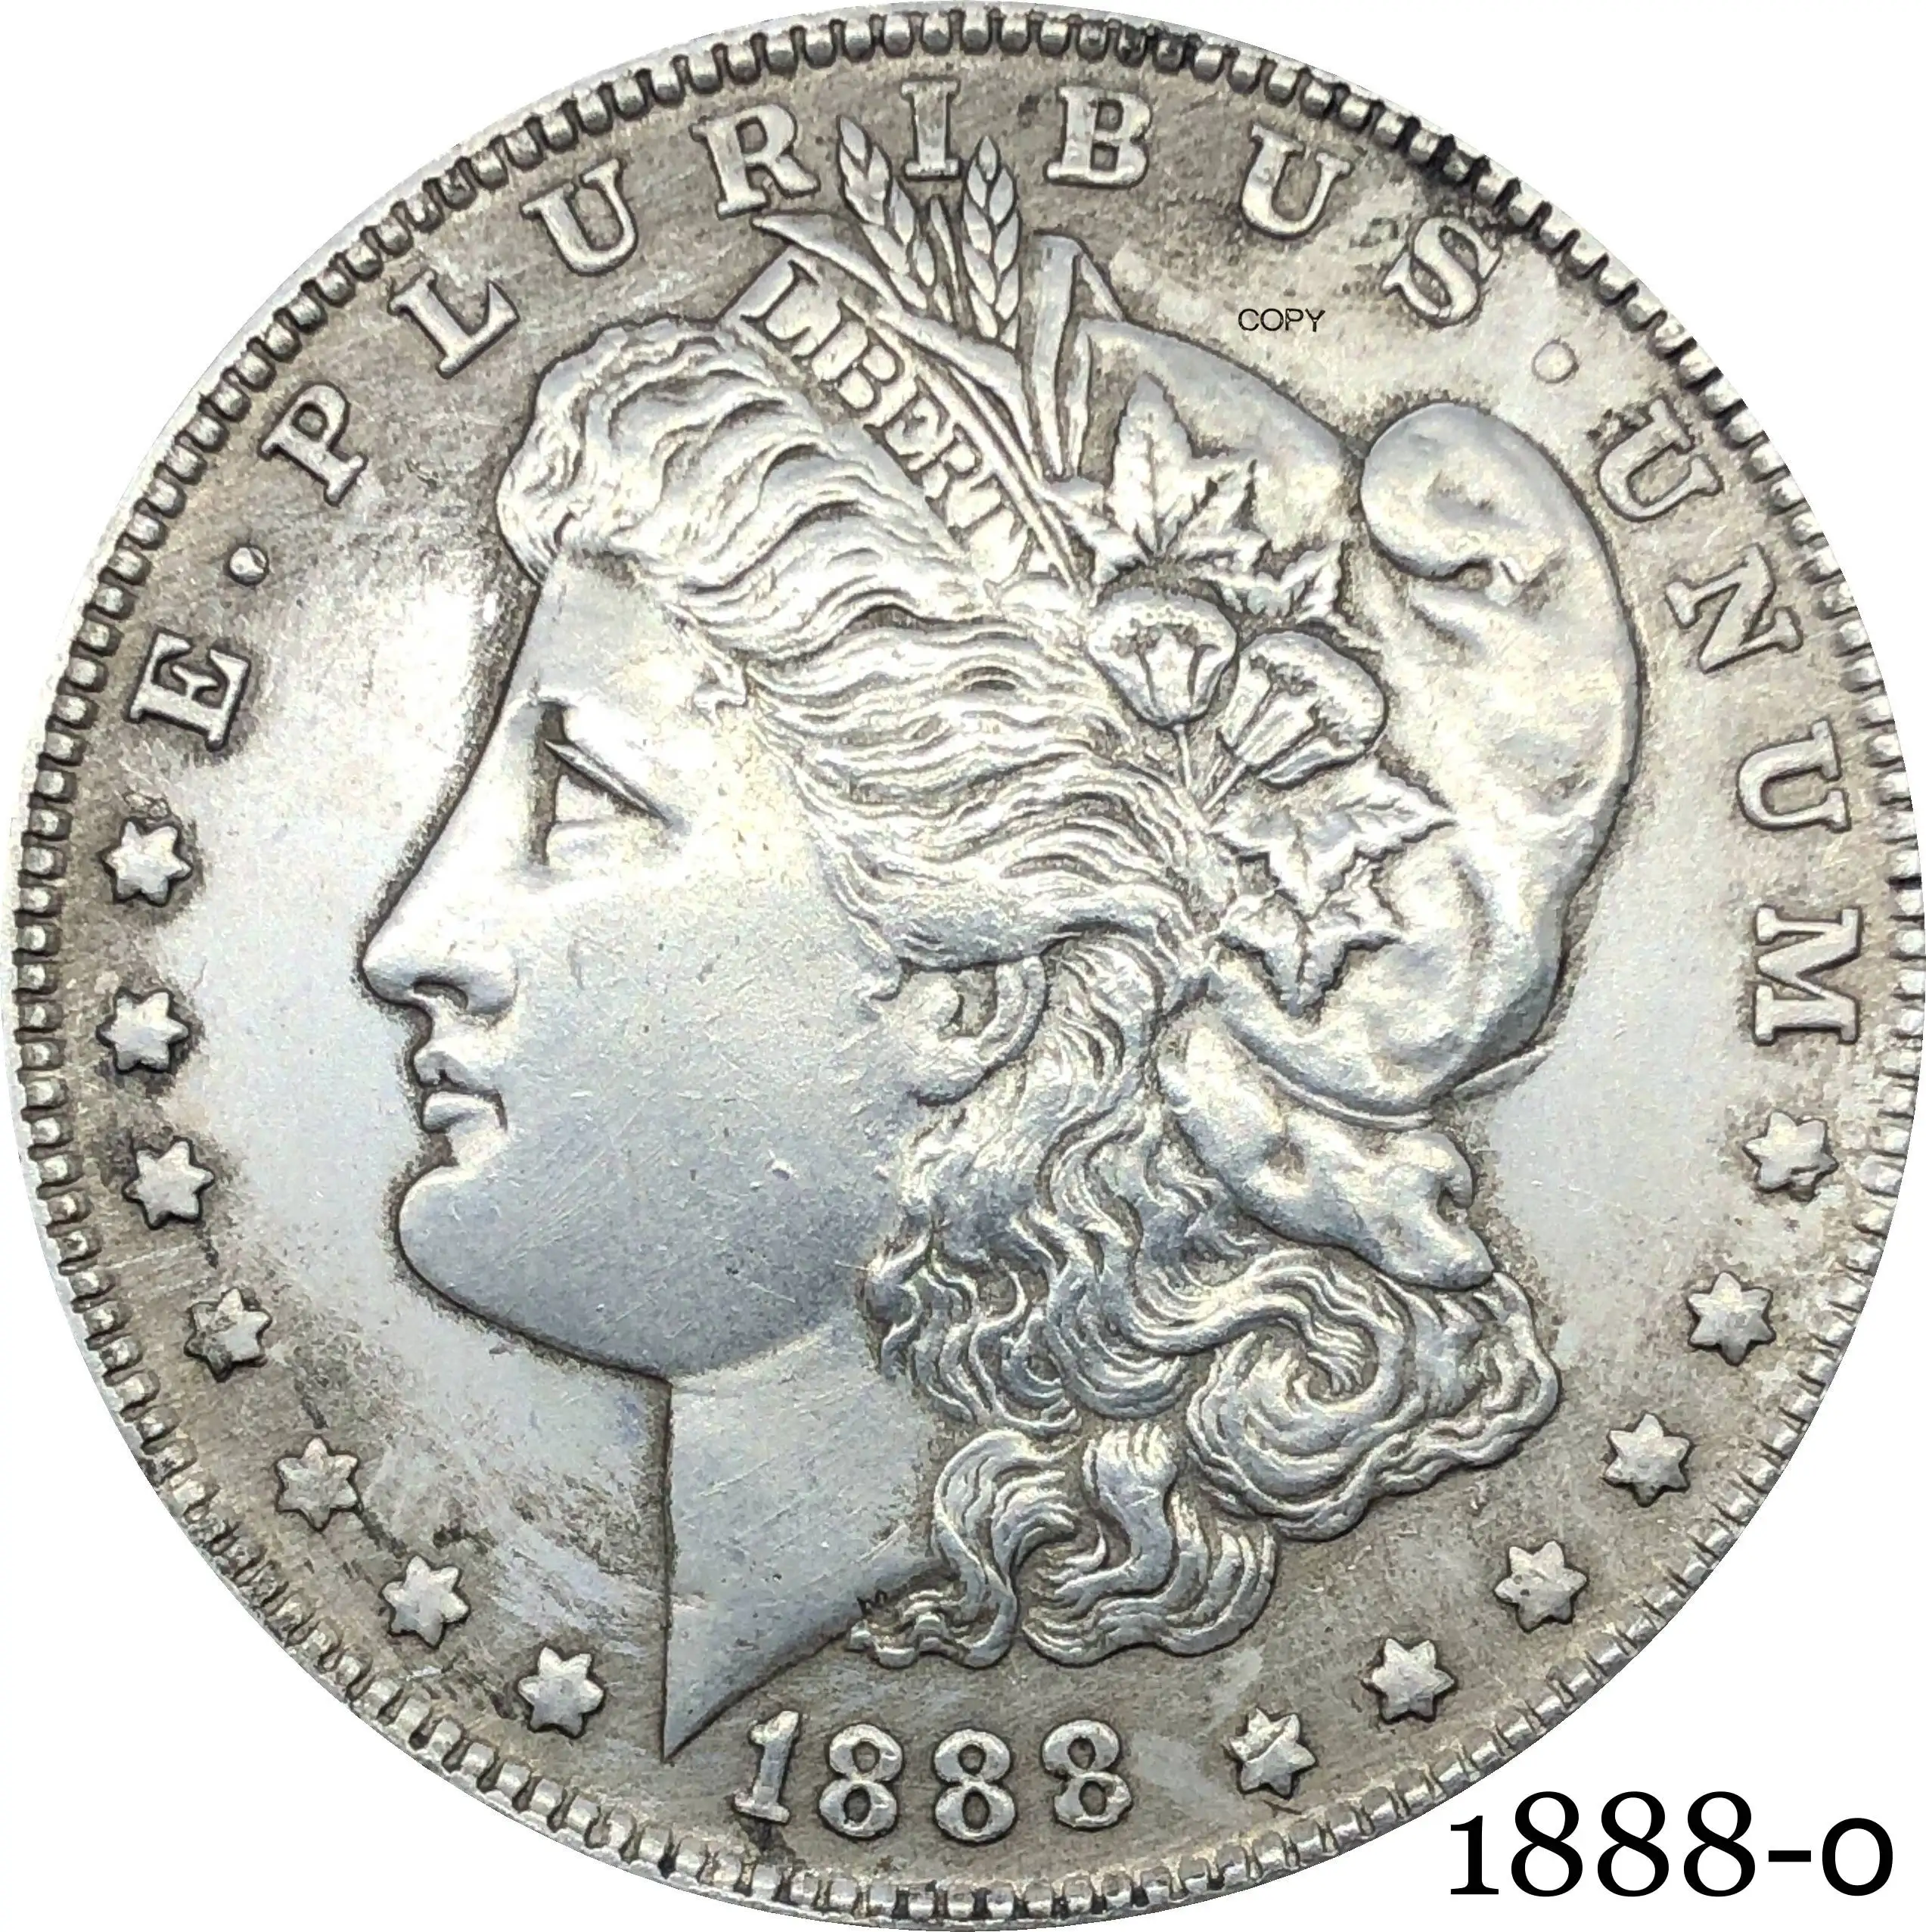 

Соединенные Штаты 1888 O Морган один доллар США Монета свобода кпроникель посеребренный в Бог, мы доверяем копии монеты